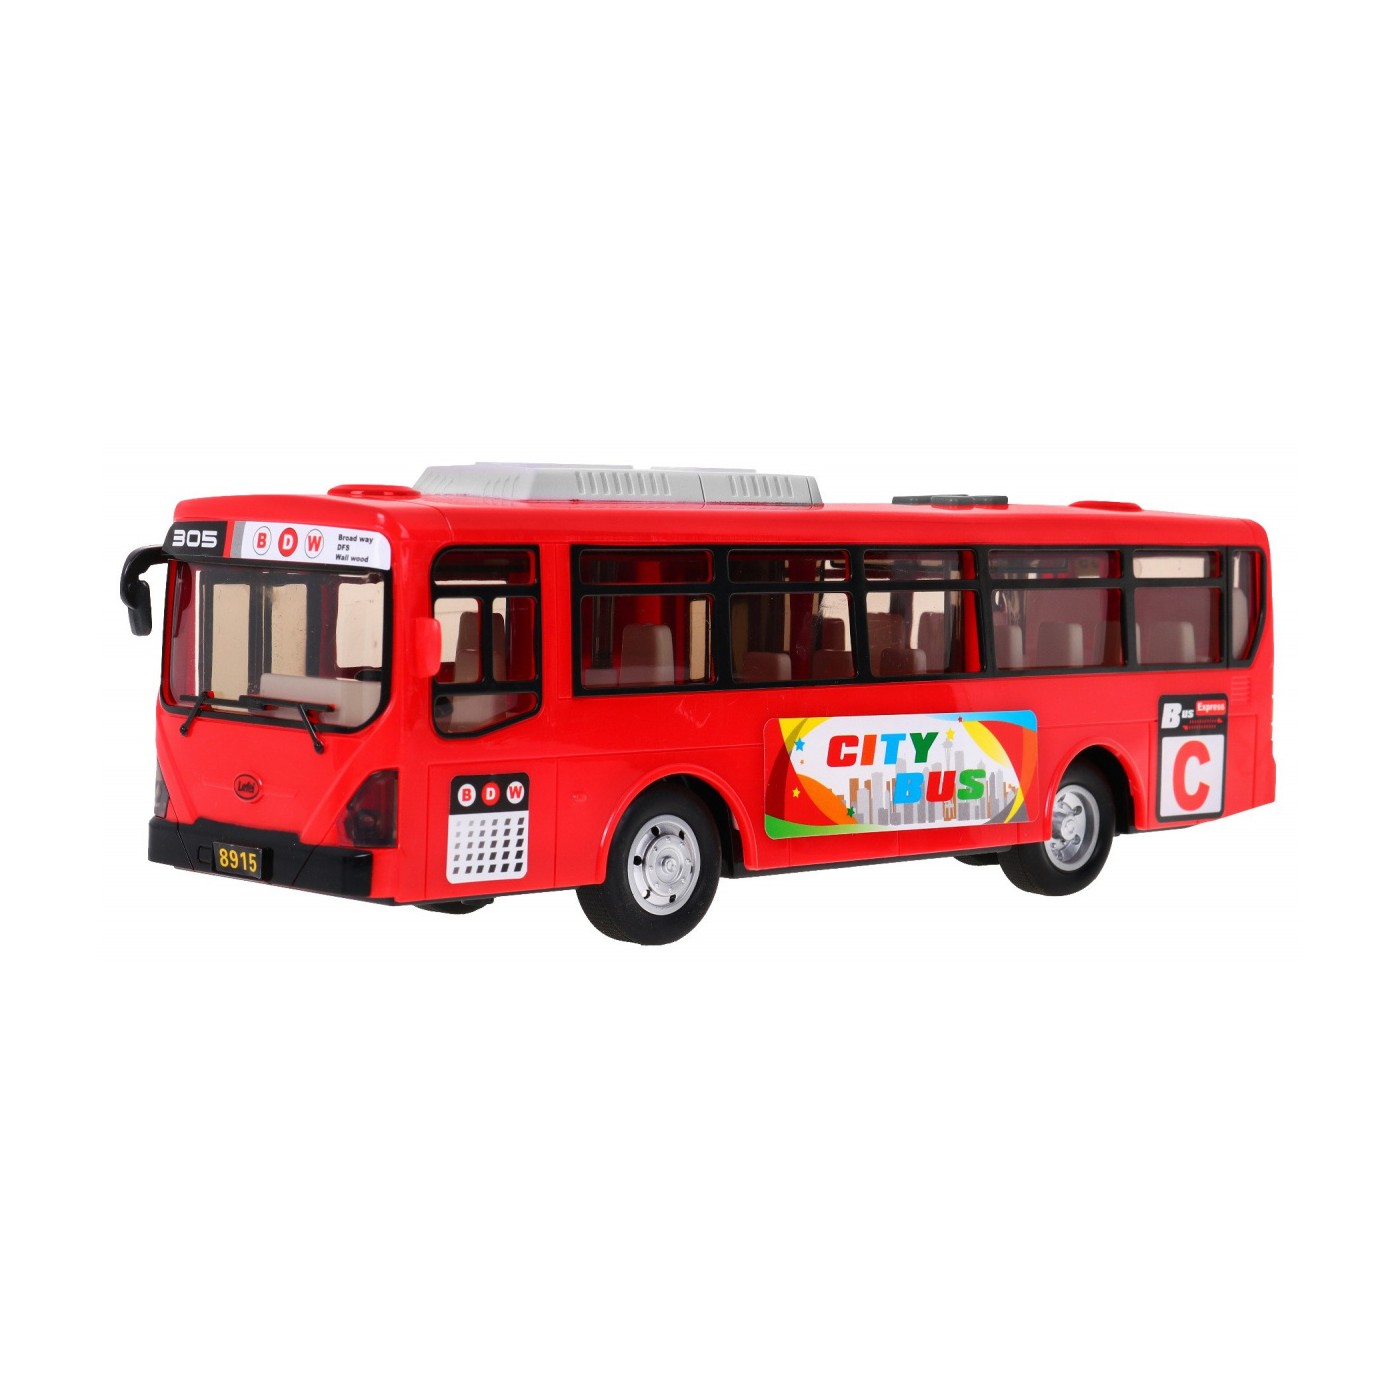 Autobus Szkolny Gimbus Dźwięki Czerwony